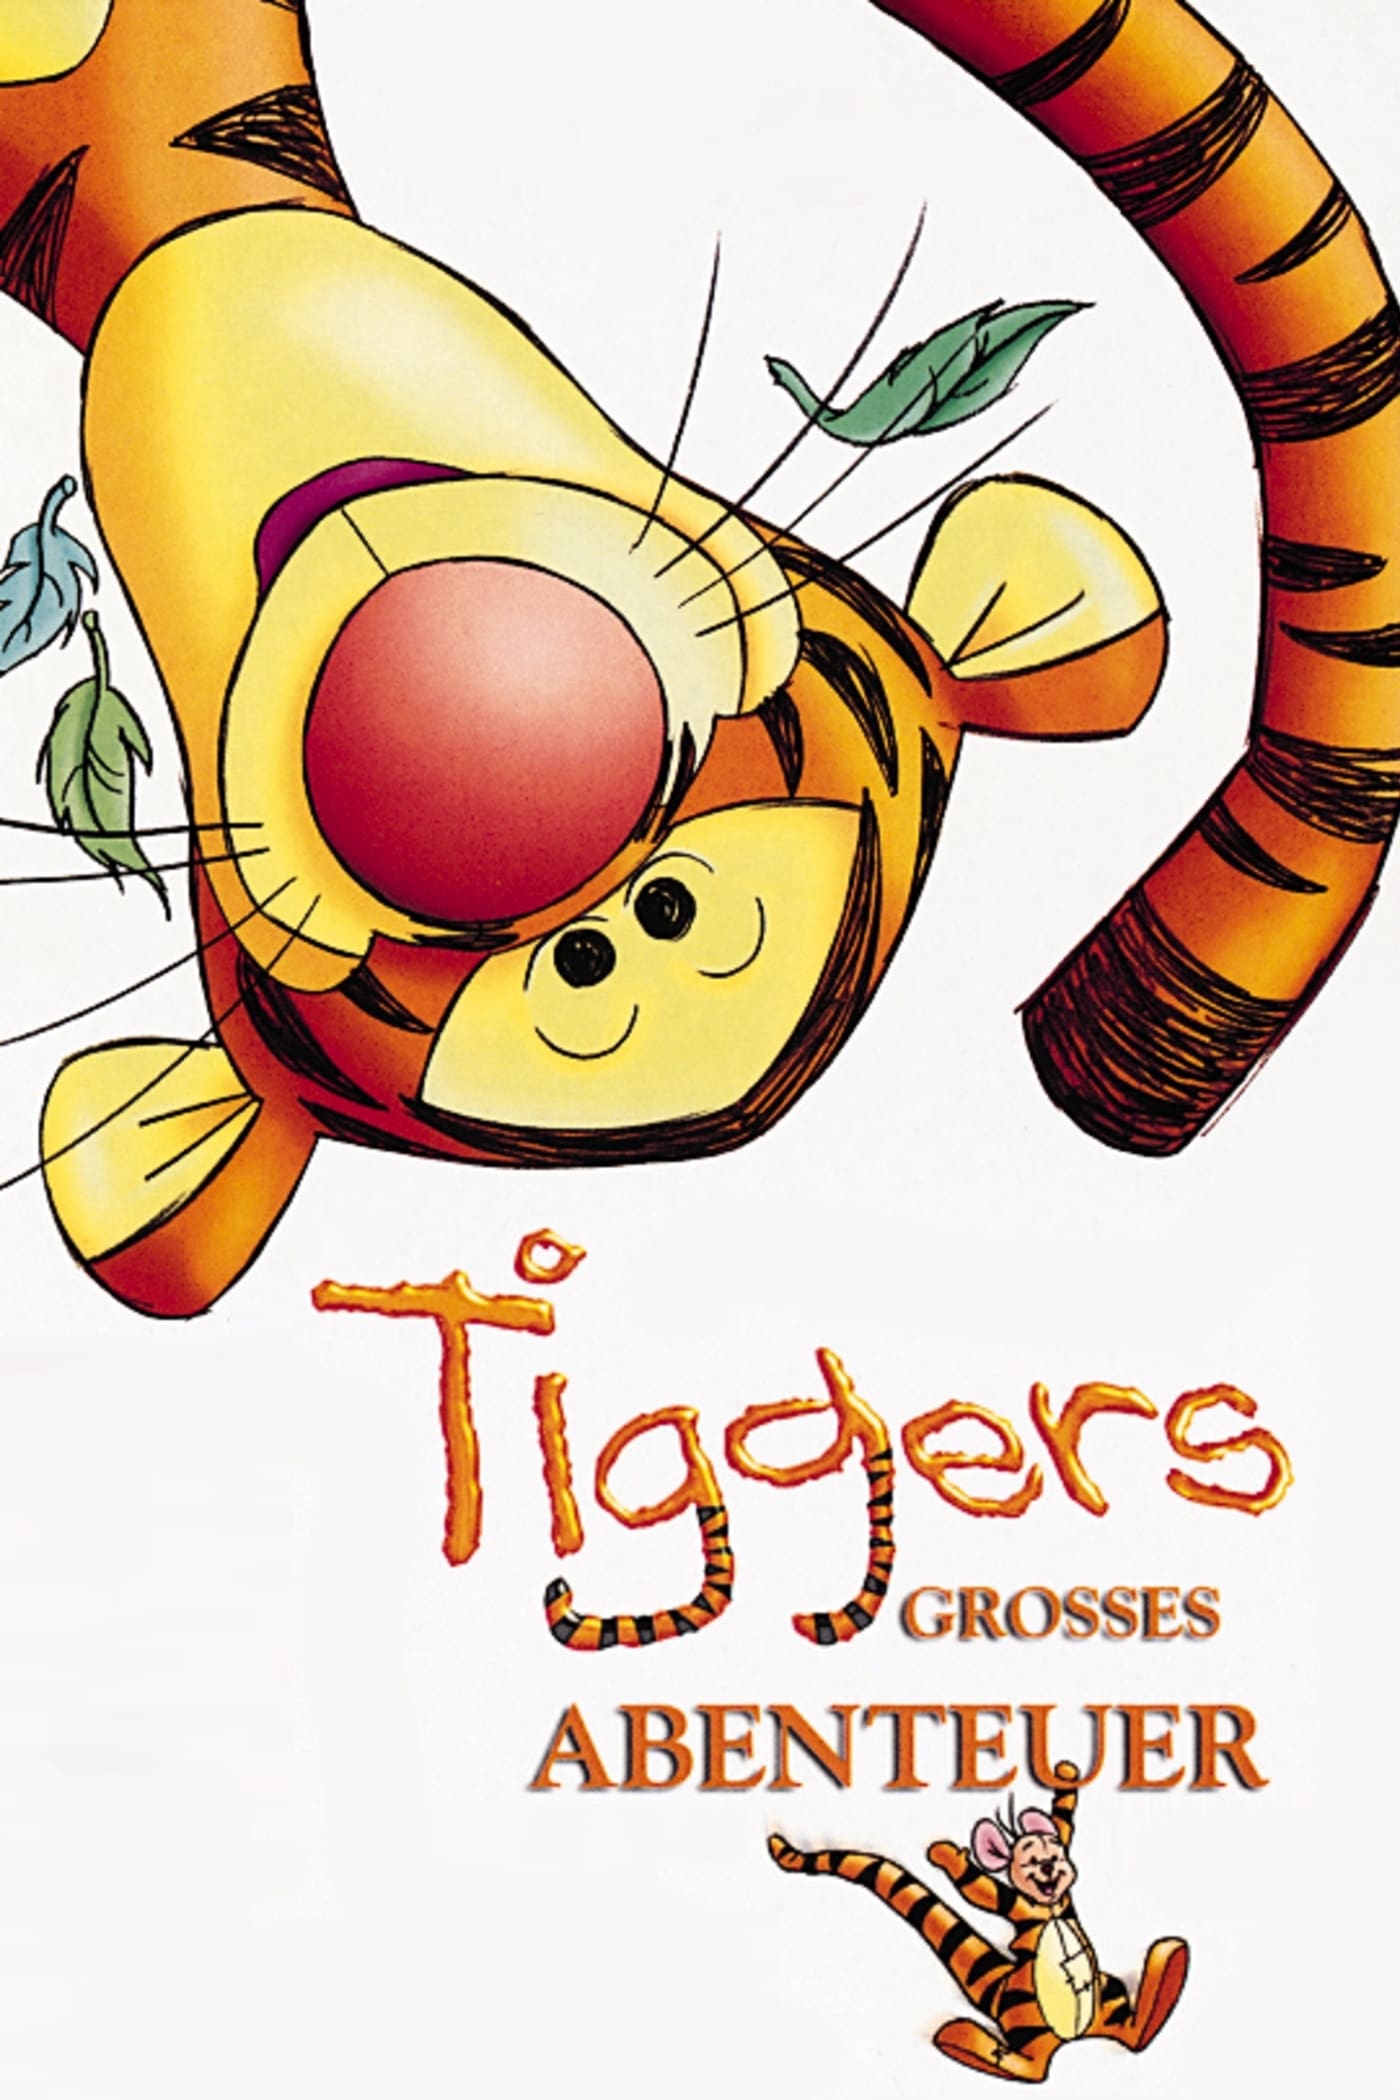 Plakat von "Tiggers großes Abenteuer"